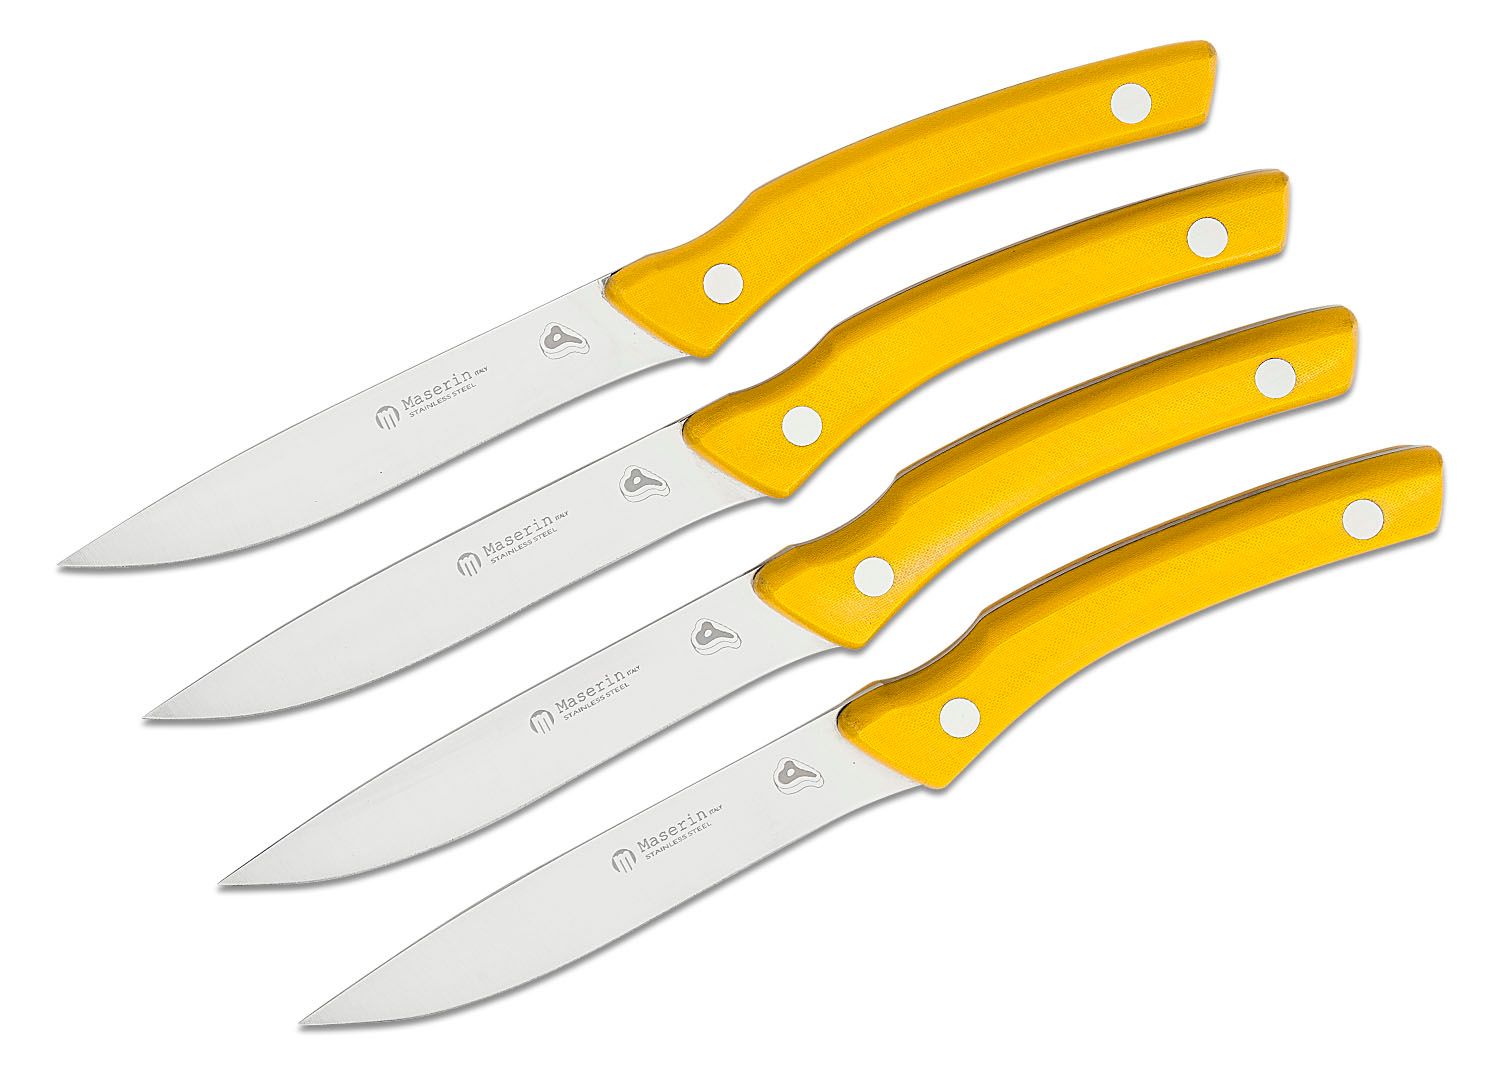 https://pics.knifecenter.com/knifecenter/maserin-italian-knives/images/ME2031MCG_1.jpg